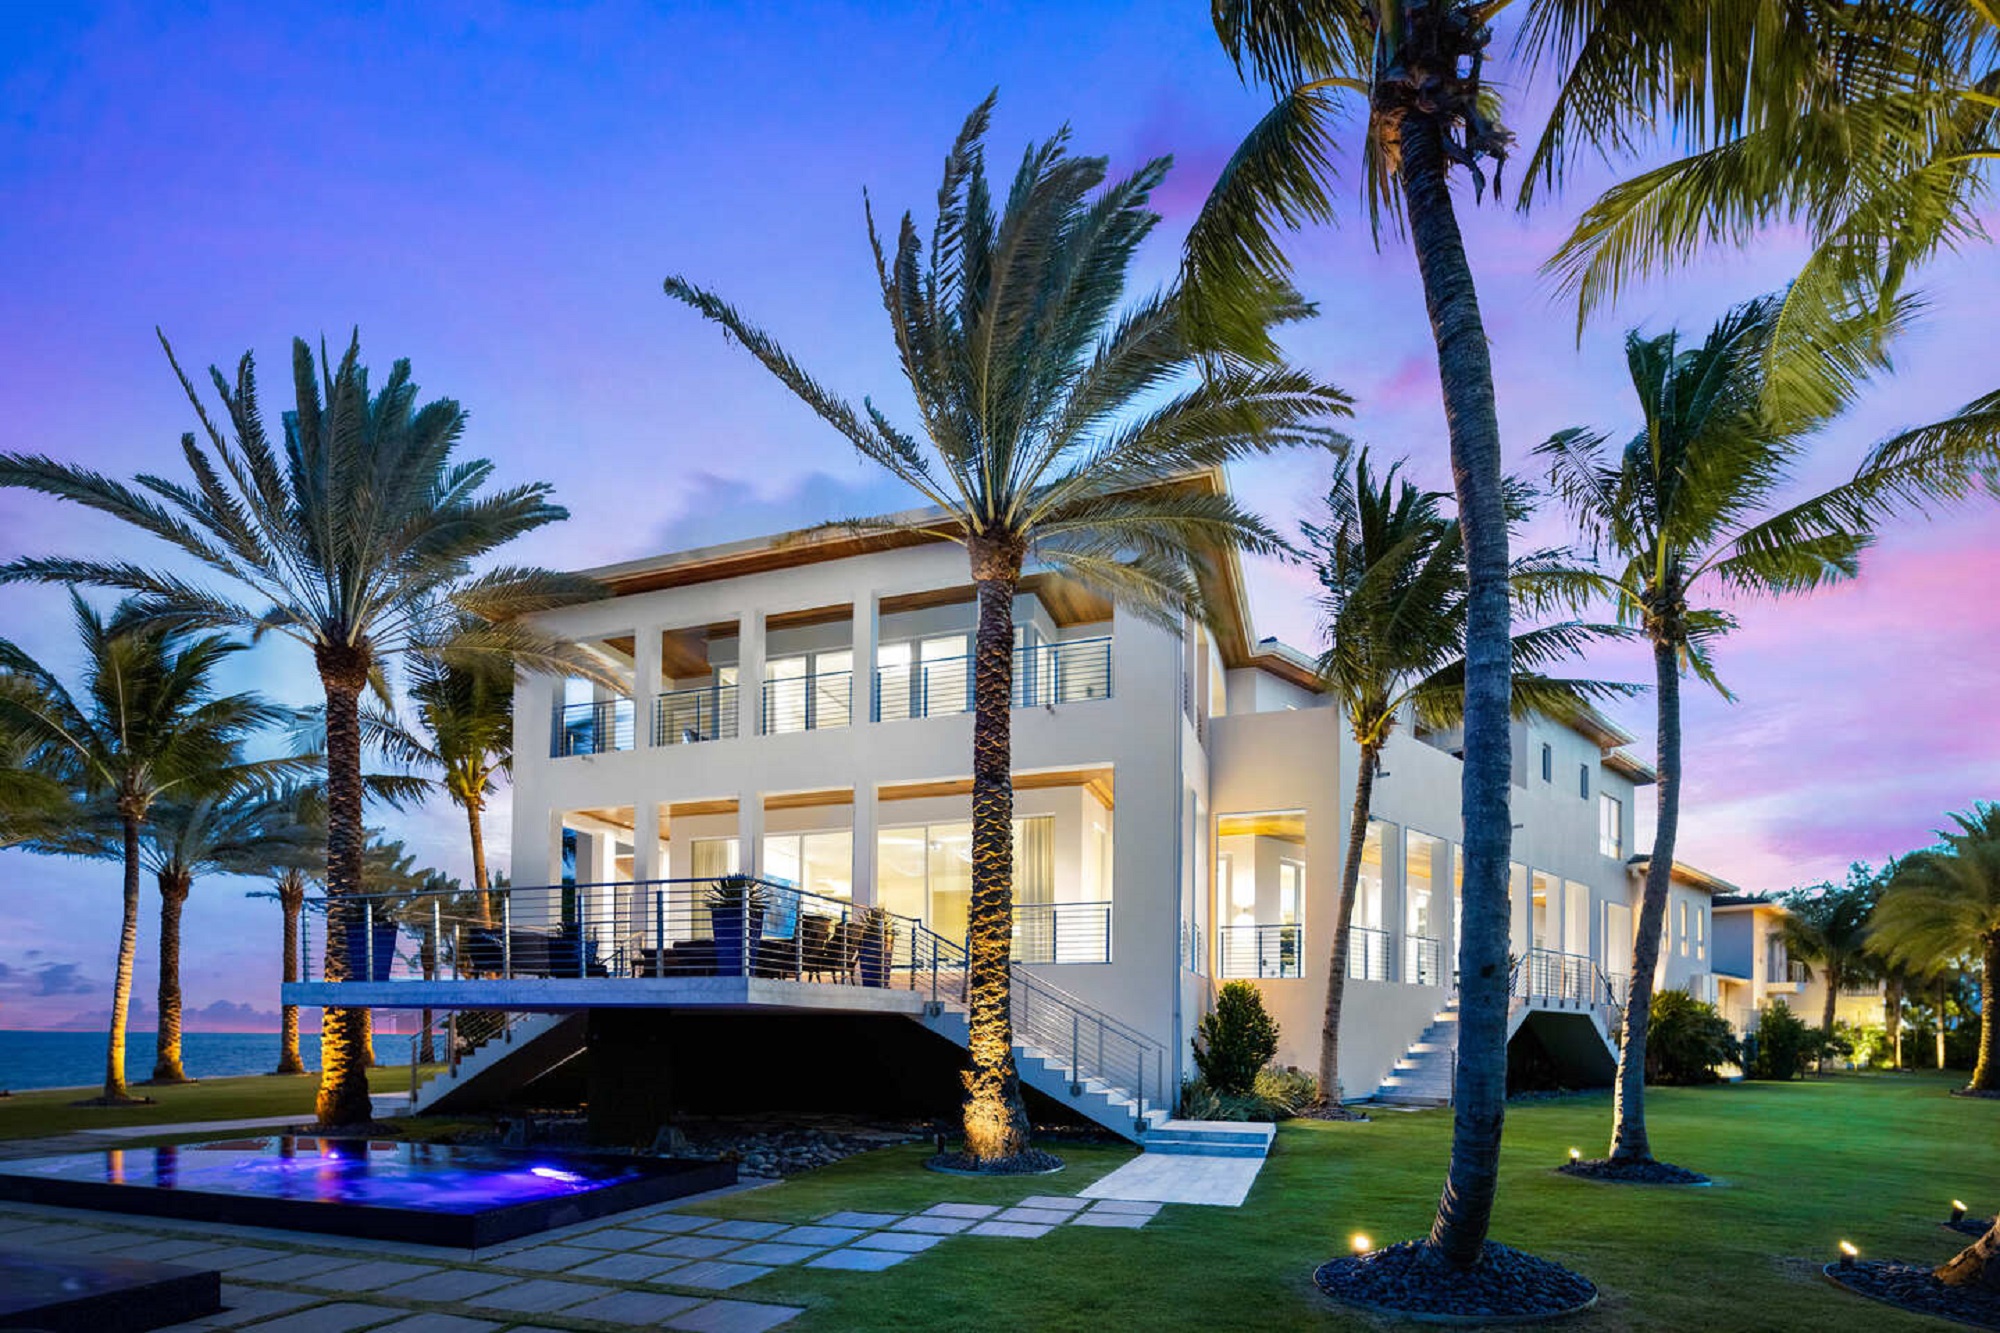 Mansiones de Miami atraen a compradores de casas de New York